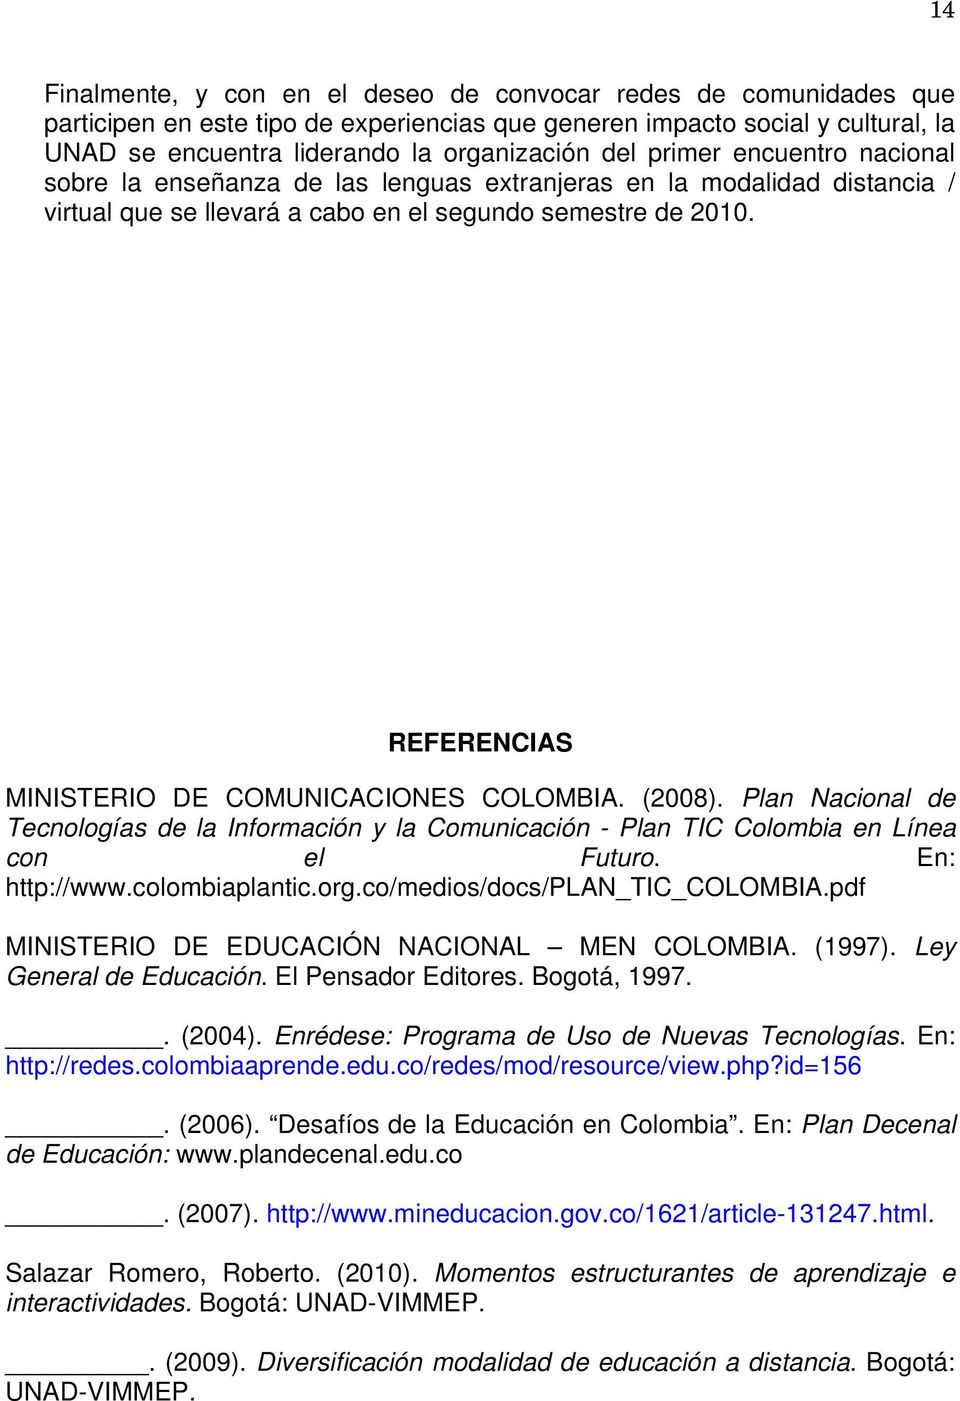 REFERENCIAS MINISTERIO DE COMUNICACIONES COLOMBIA. (2008). Plan Nacional de Tecnologías de la Información y la Comunicación - Plan TIC Colombia en Línea con el Futuro. En: http://www.colombiaplantic.